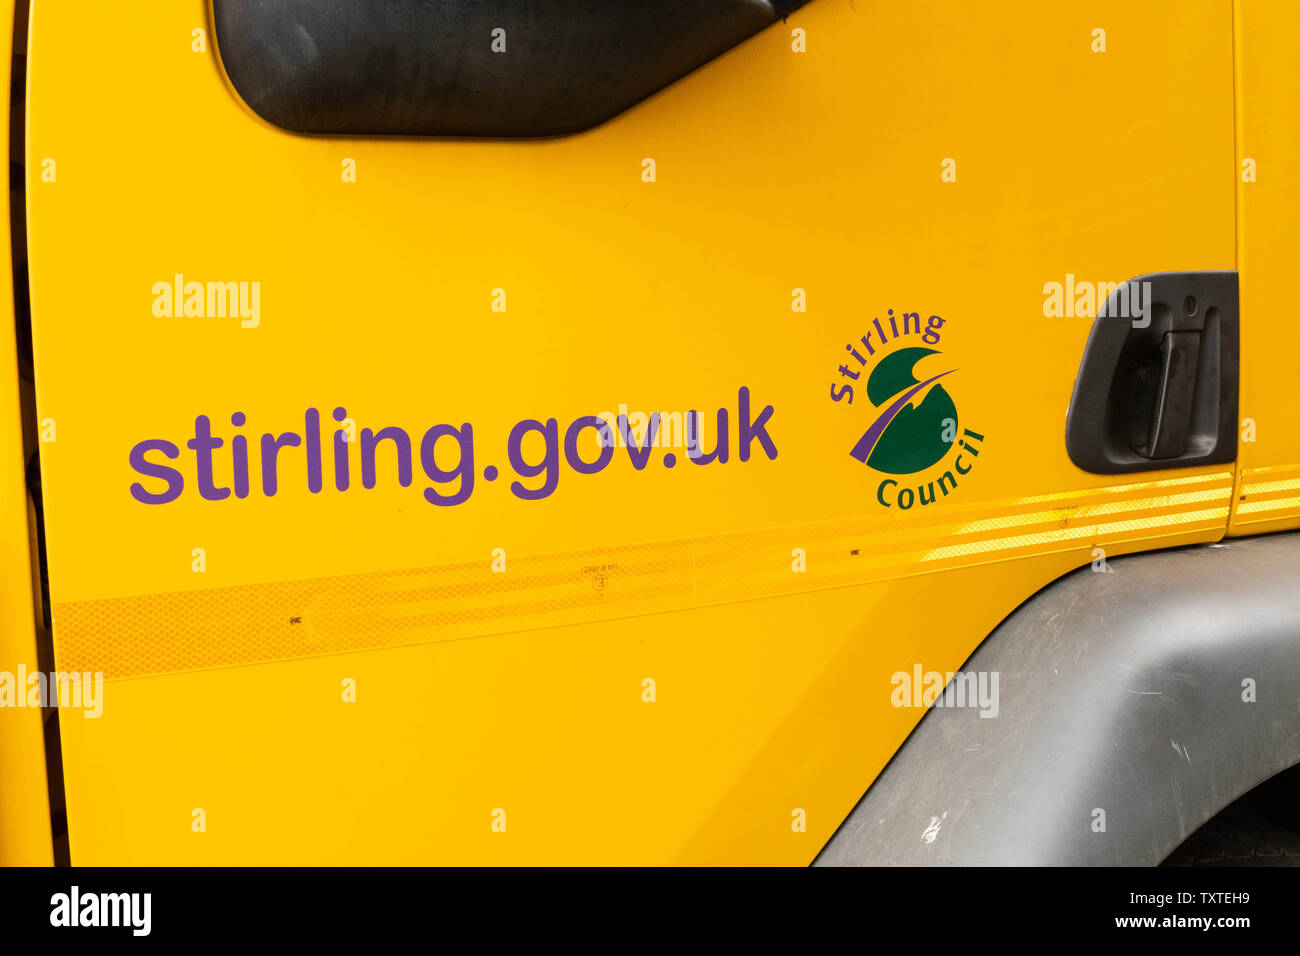 Stirling Rat Web site Adresse auf der Seite des Lkw, Schottland, Großbritannien Stockfoto